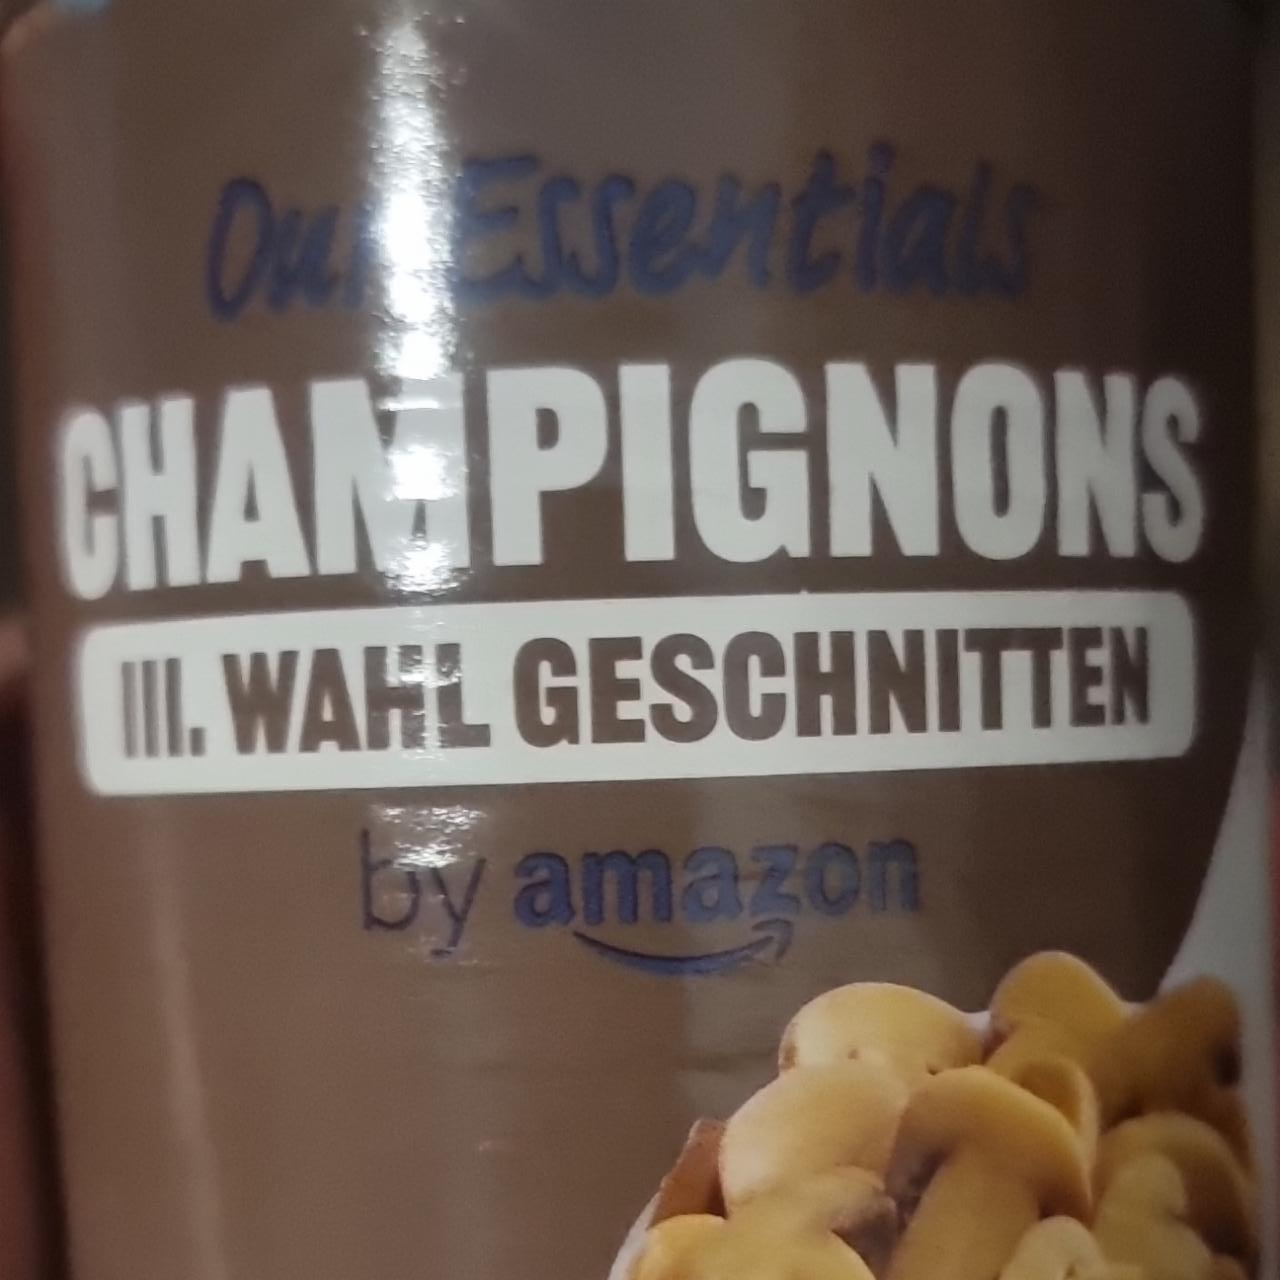 Fotografie - Our essentials champignons iii. wahl geschnitten by Amazon